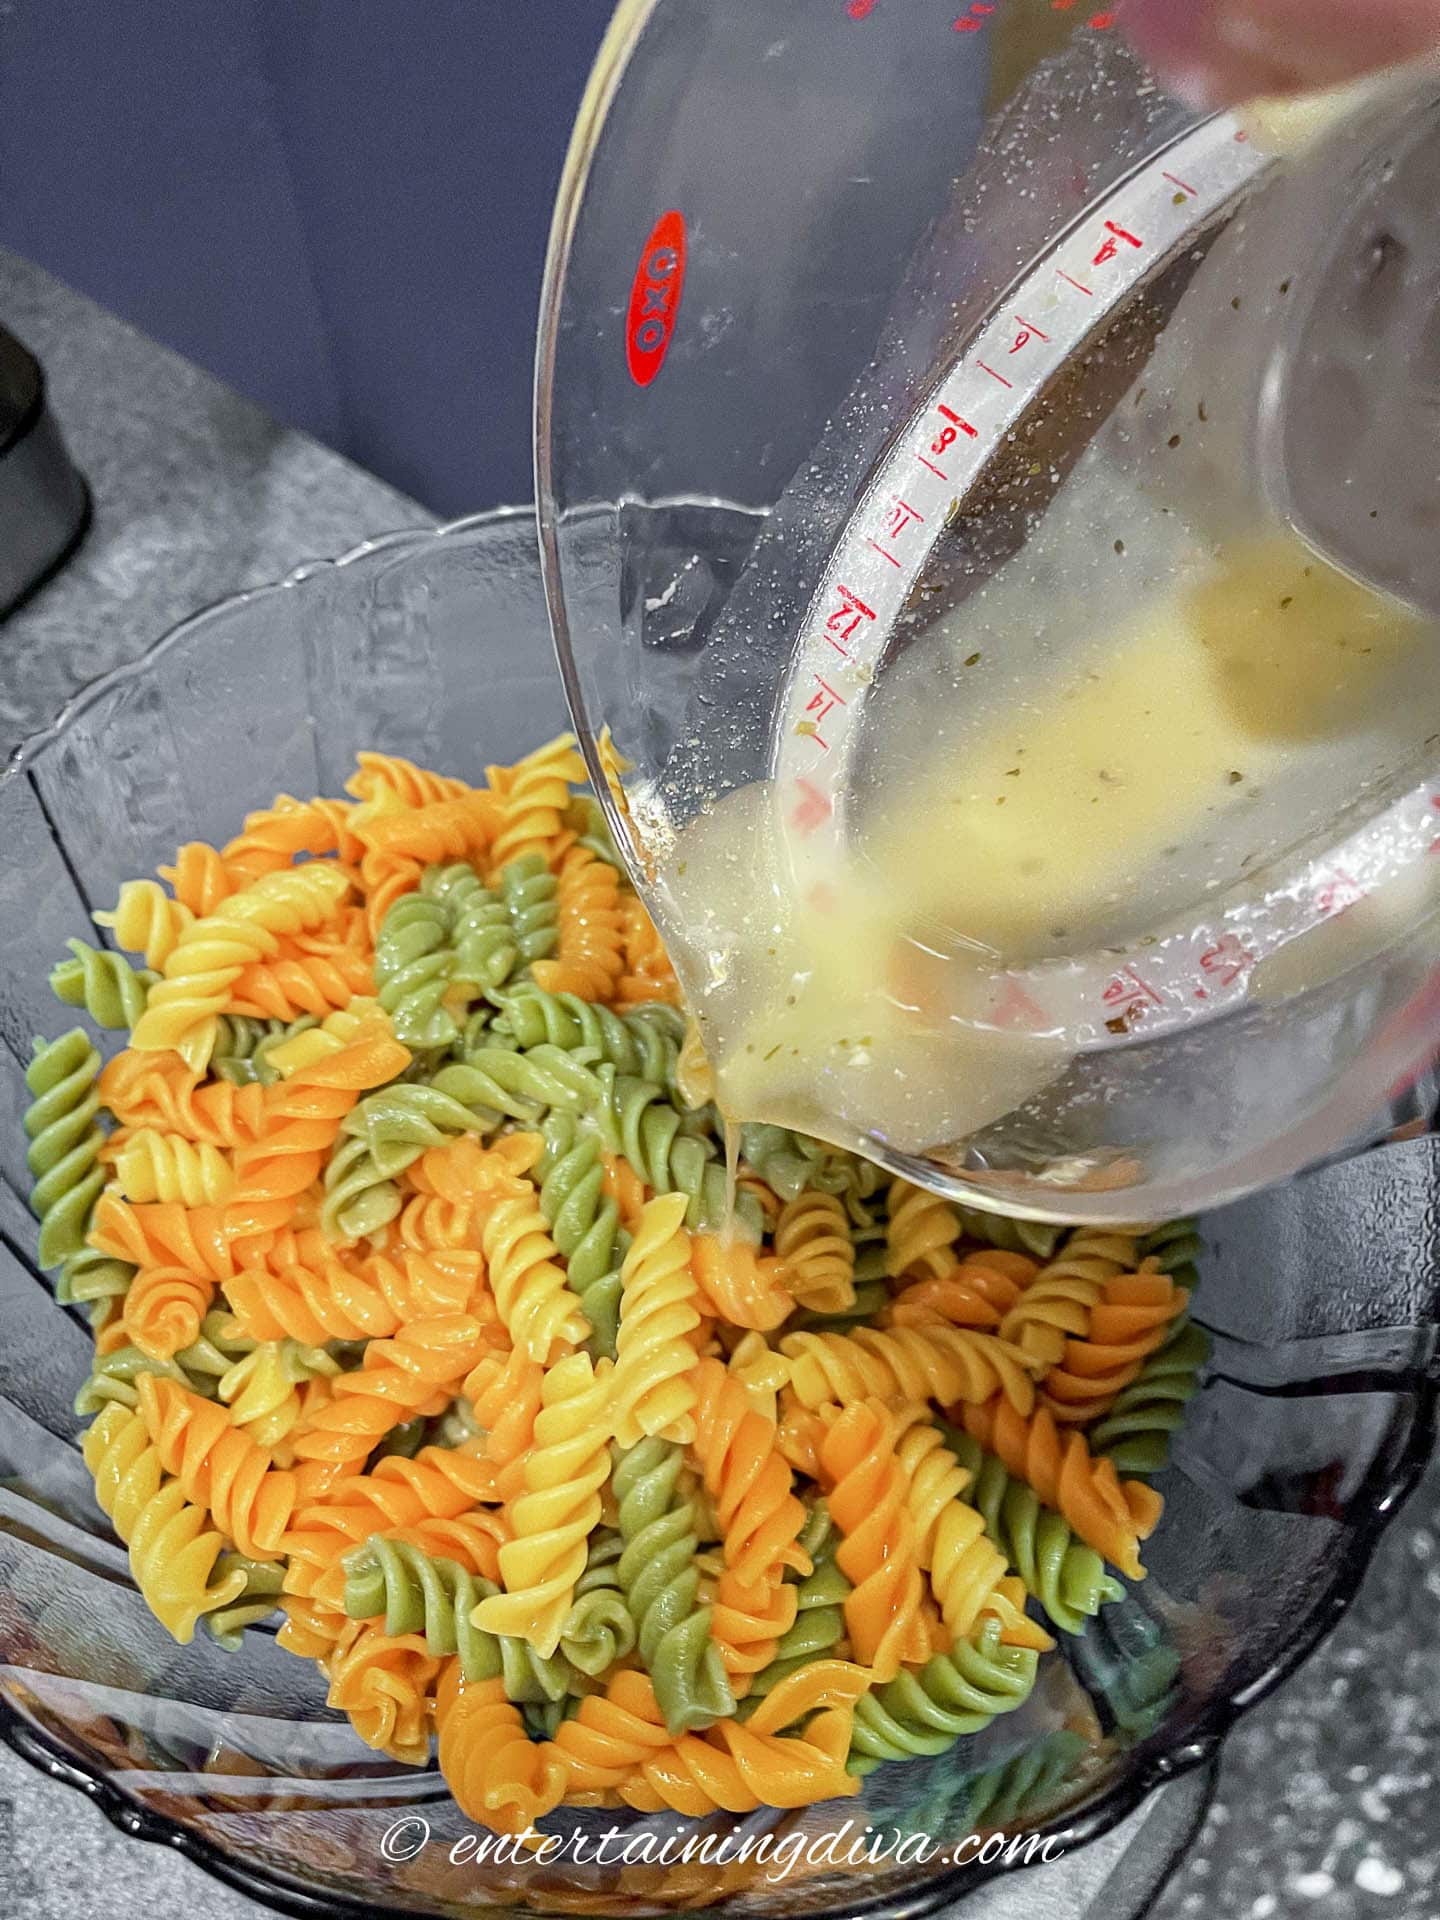 italian dressing benig poured over tricolor pasta